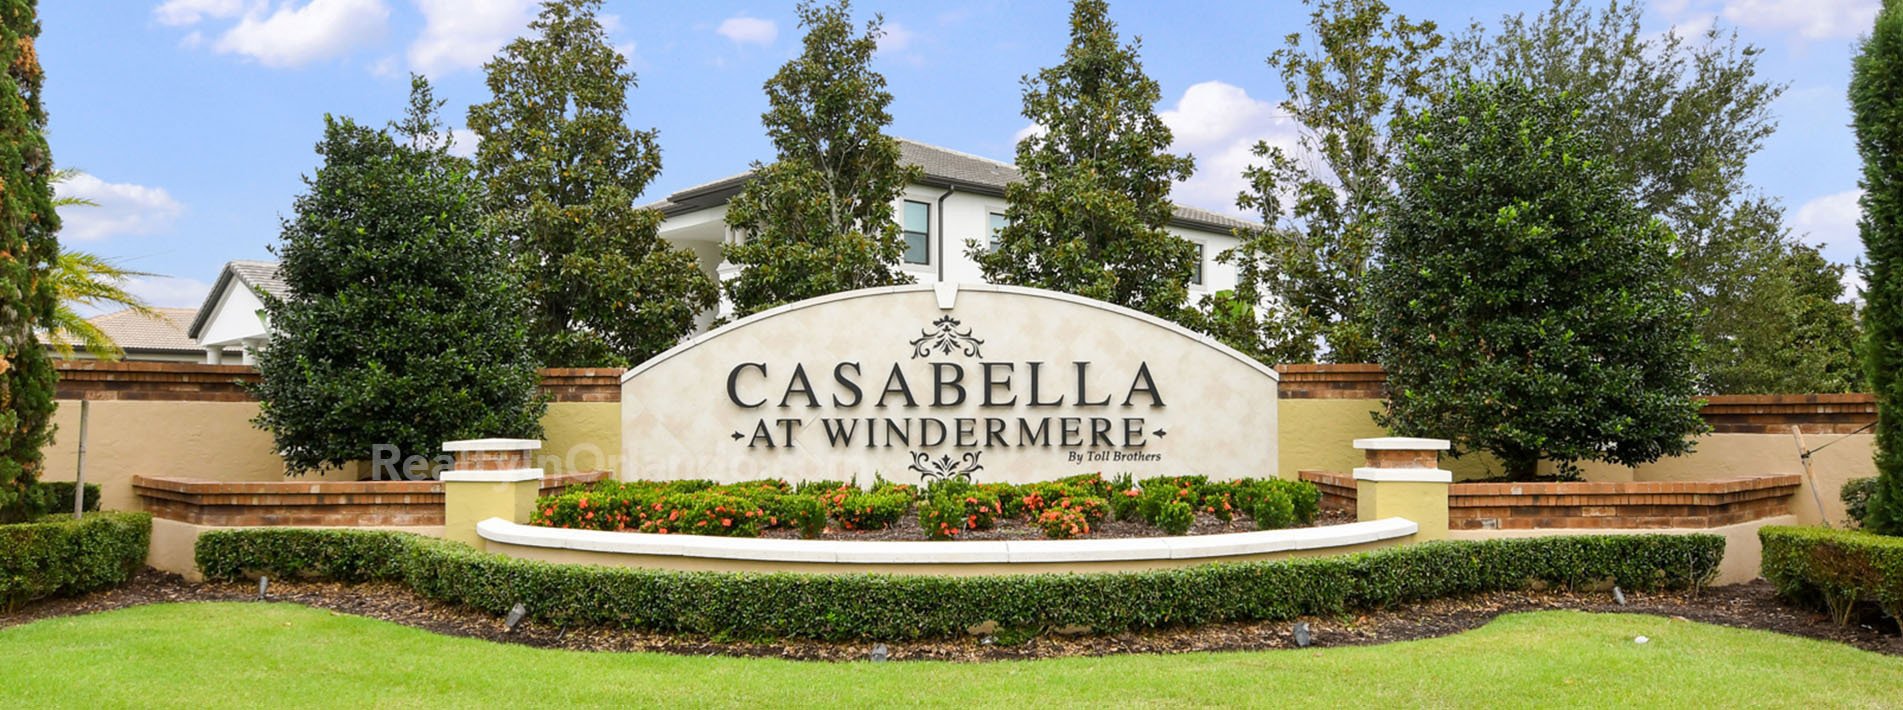 Casabella at Windermere Real Estate